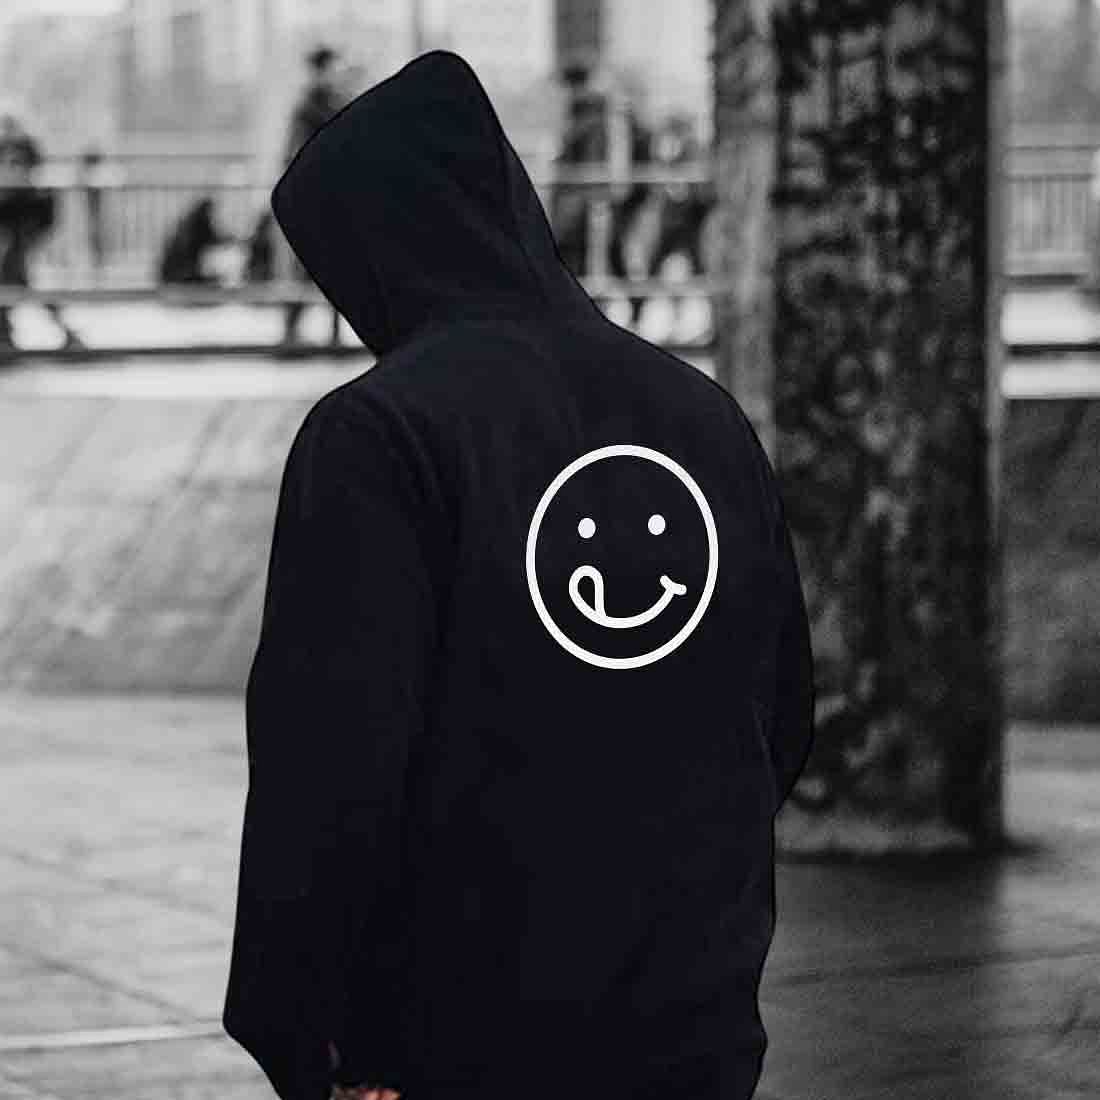 Nutcase hoodie For Men with name on back print ( Unisex) - Cute Emoji Nutcase